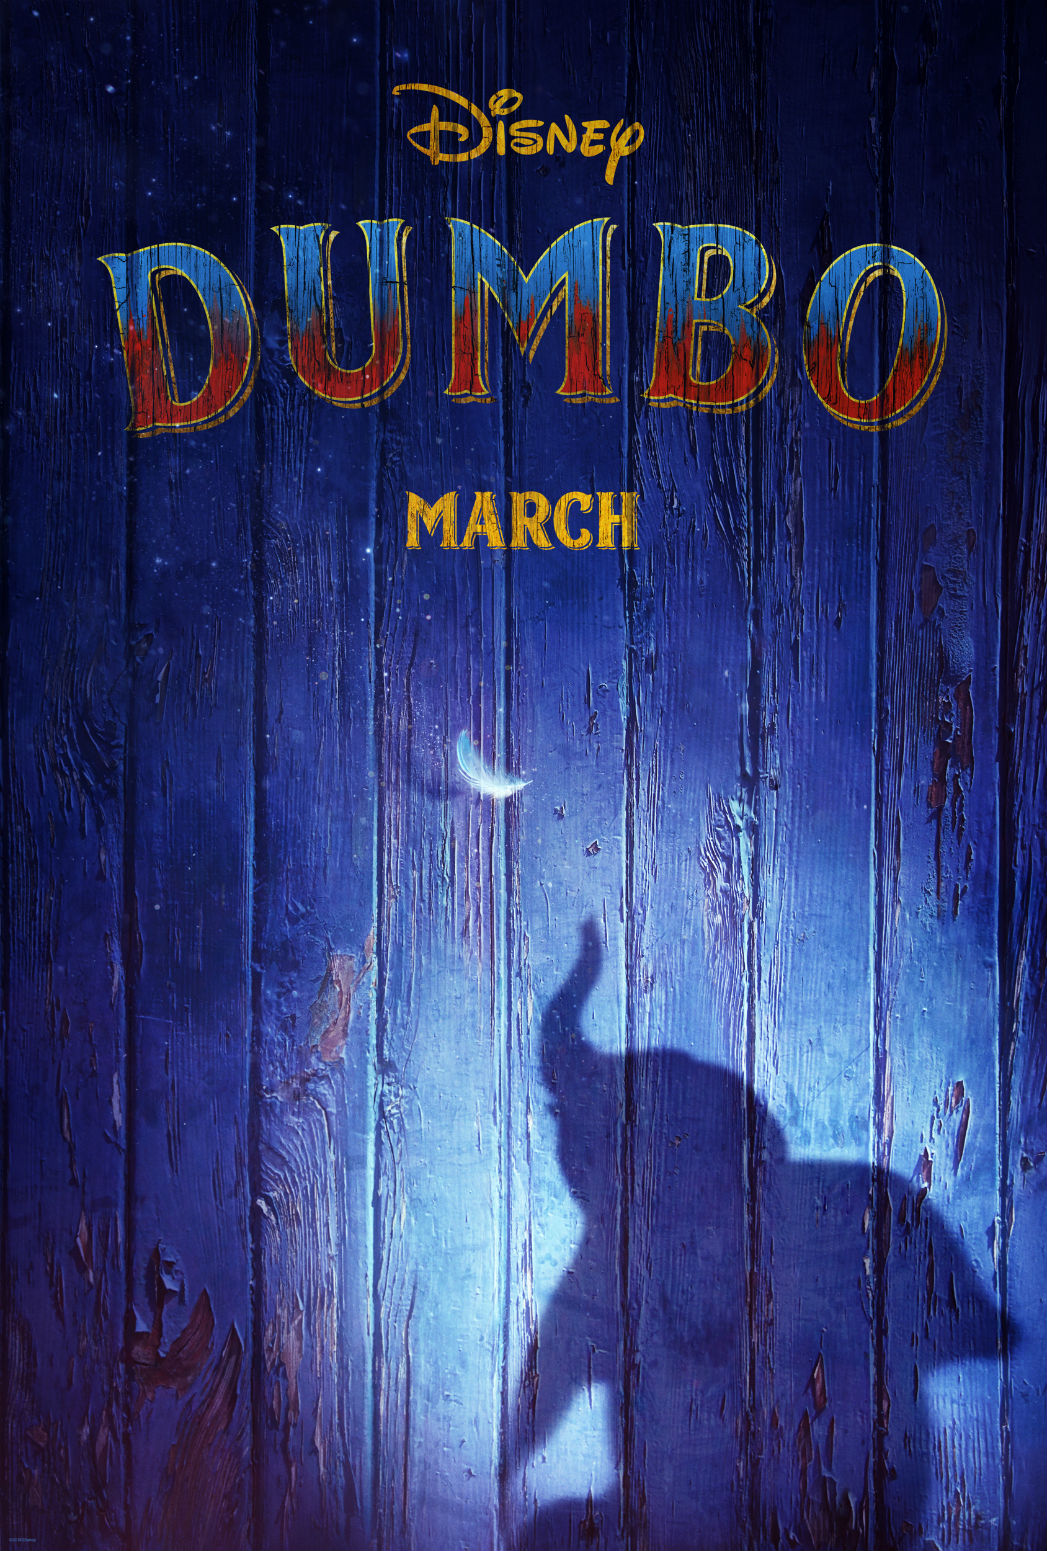  ديزني تقوم بإطلاق التريلر الأول لفيلم دمبو Dumbo